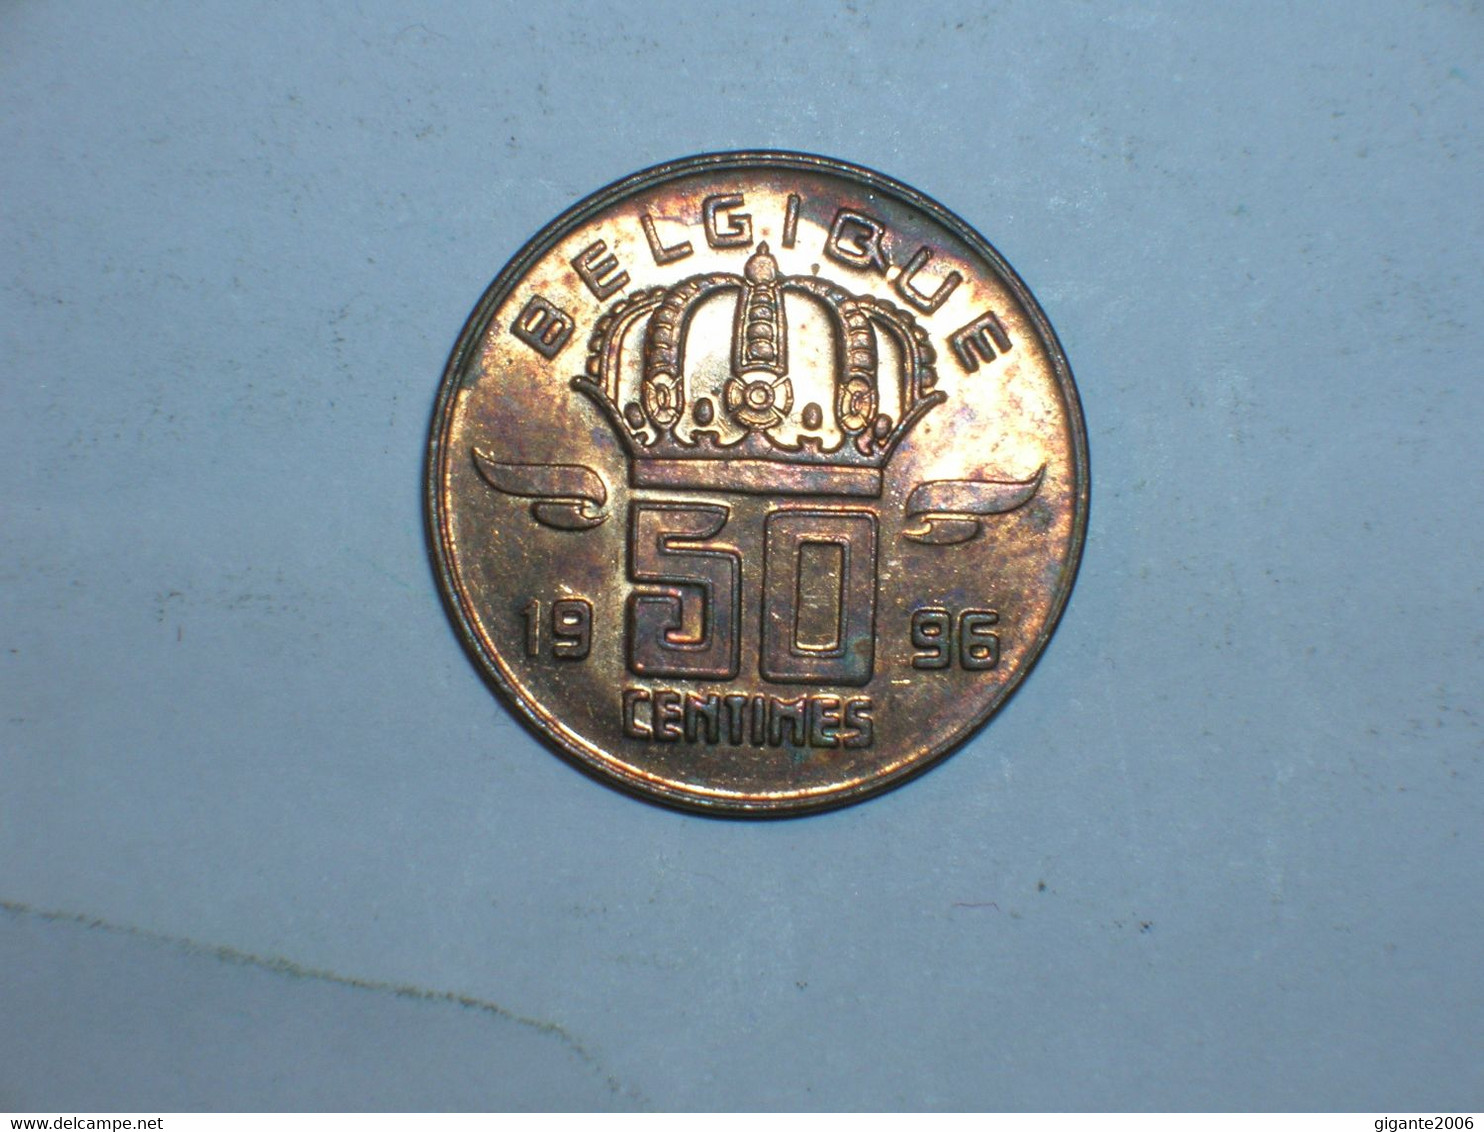 BELGICA 50 CENTIMOS 1996 FR (9578) - 50 Centimes